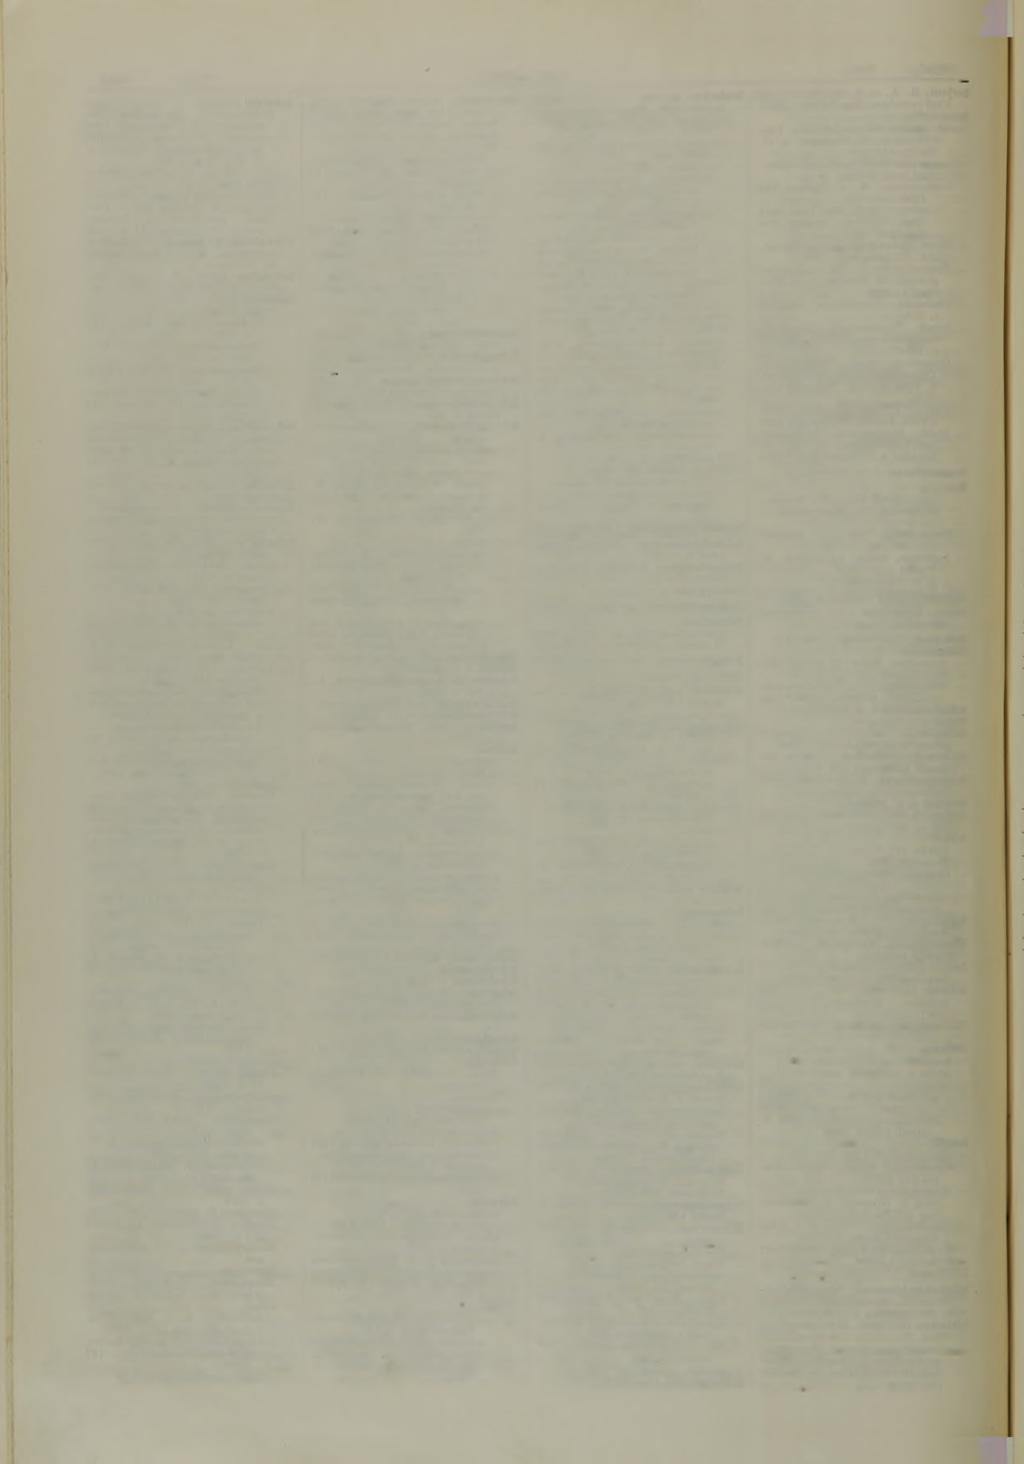 XXVI Schwe- Sachverzeichnis. Spr Jg. 1939. Schweiß(en) naht (ferner) Prüfung, M agnetpulververfahren s. *939 spannungsfrei geglühte: H. Busch [A] s.